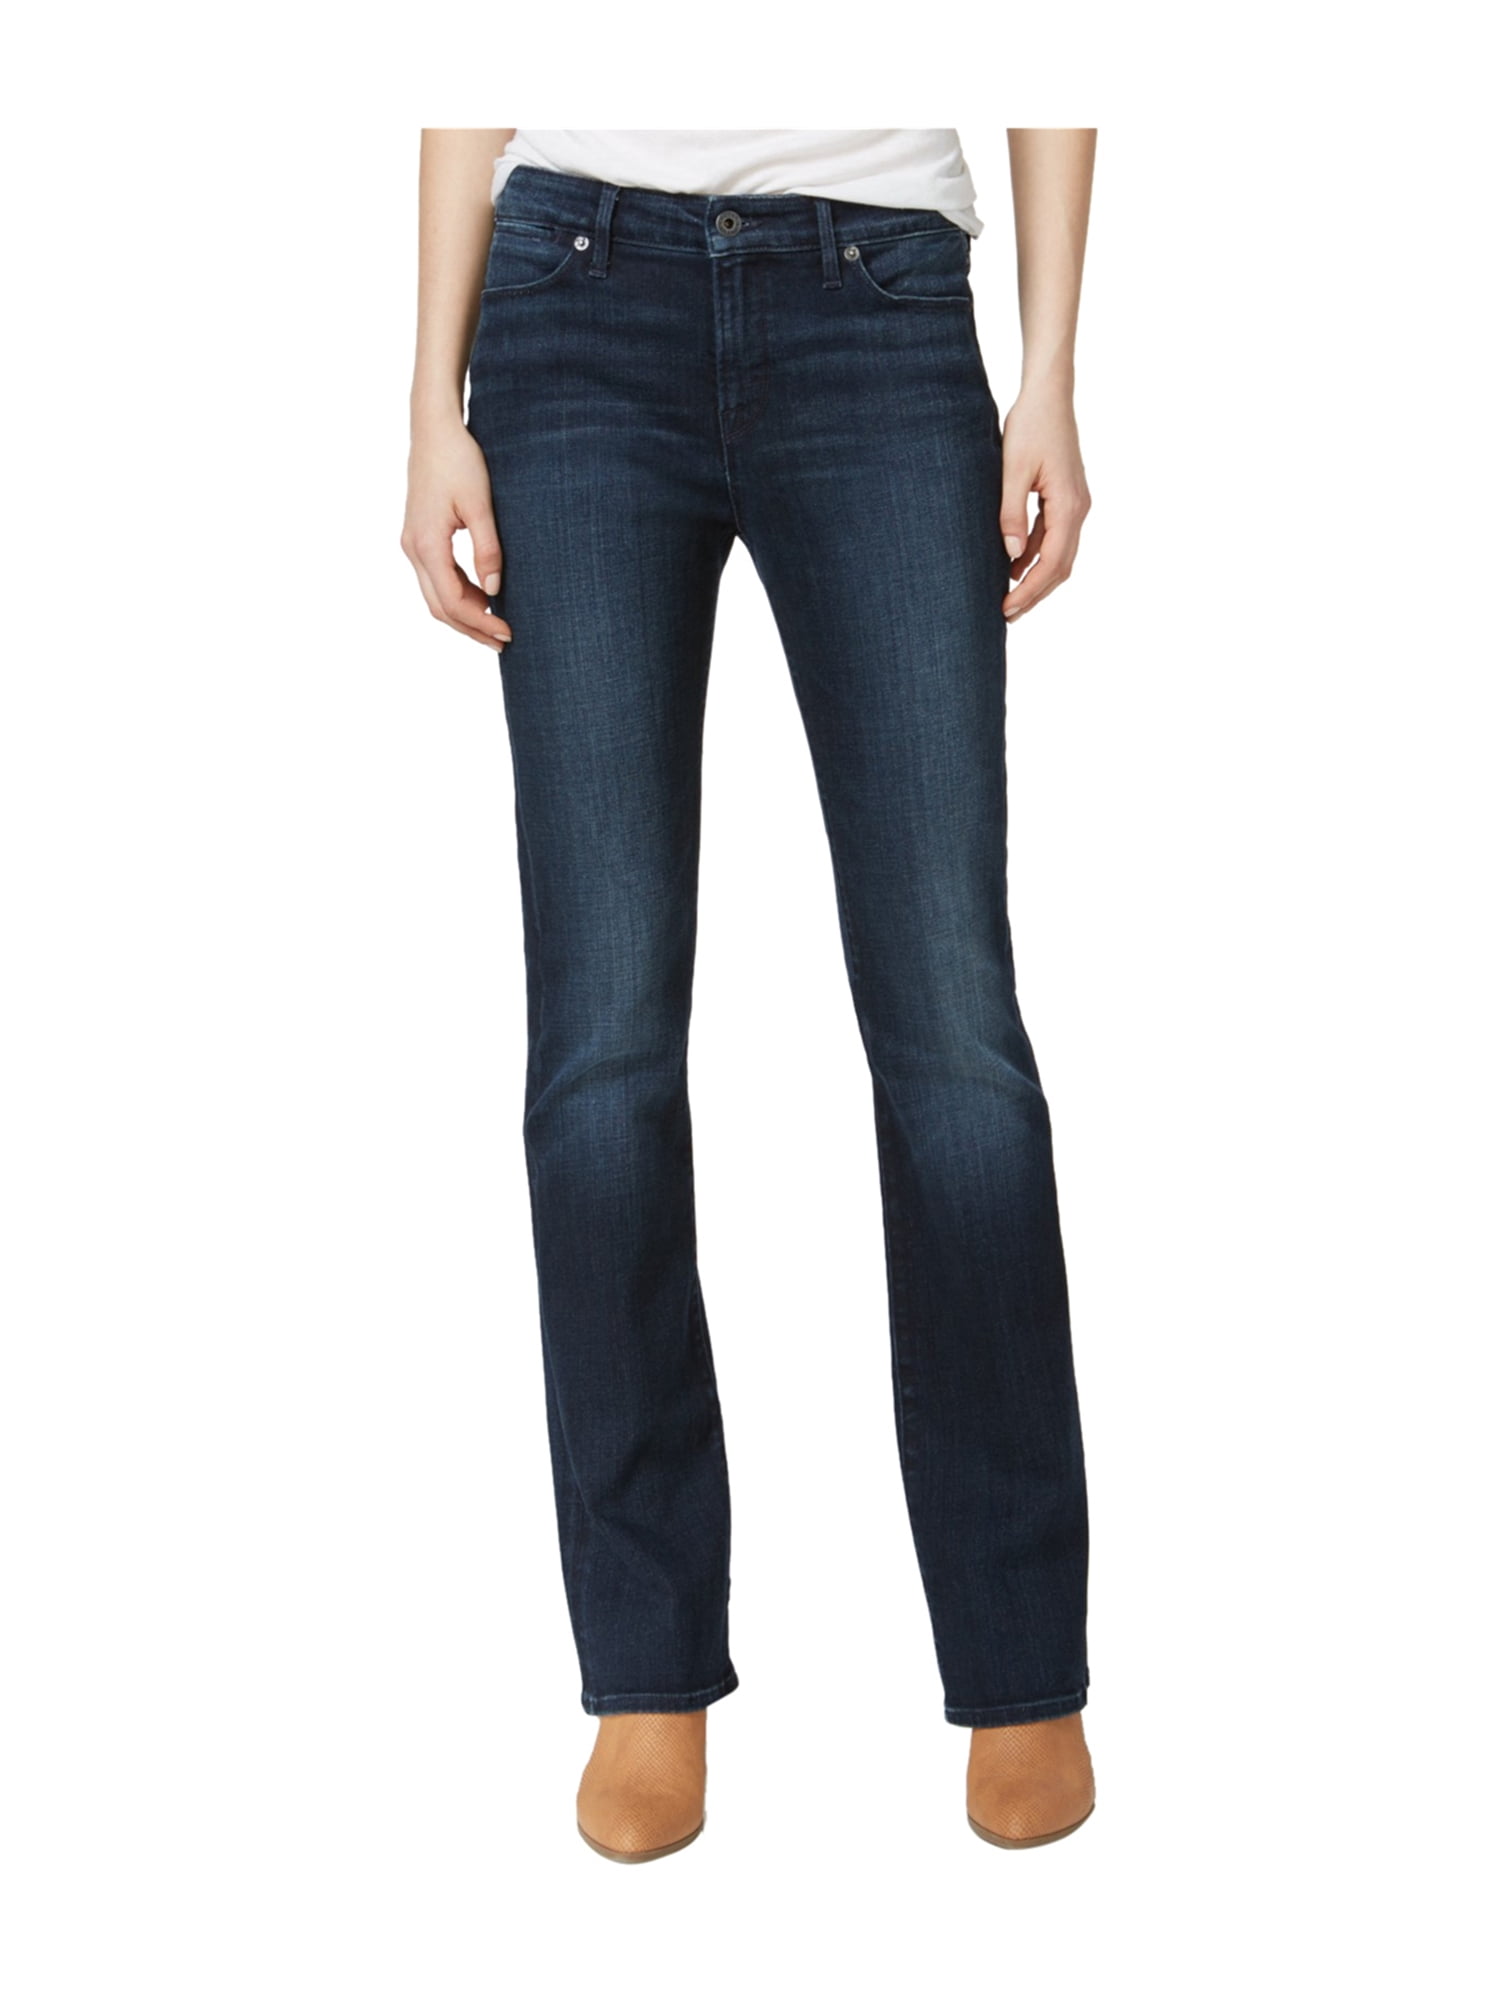 Lucky Brand - Lucky Brand Womens Hayden Slim Fit Jeans - Walmart.com ...